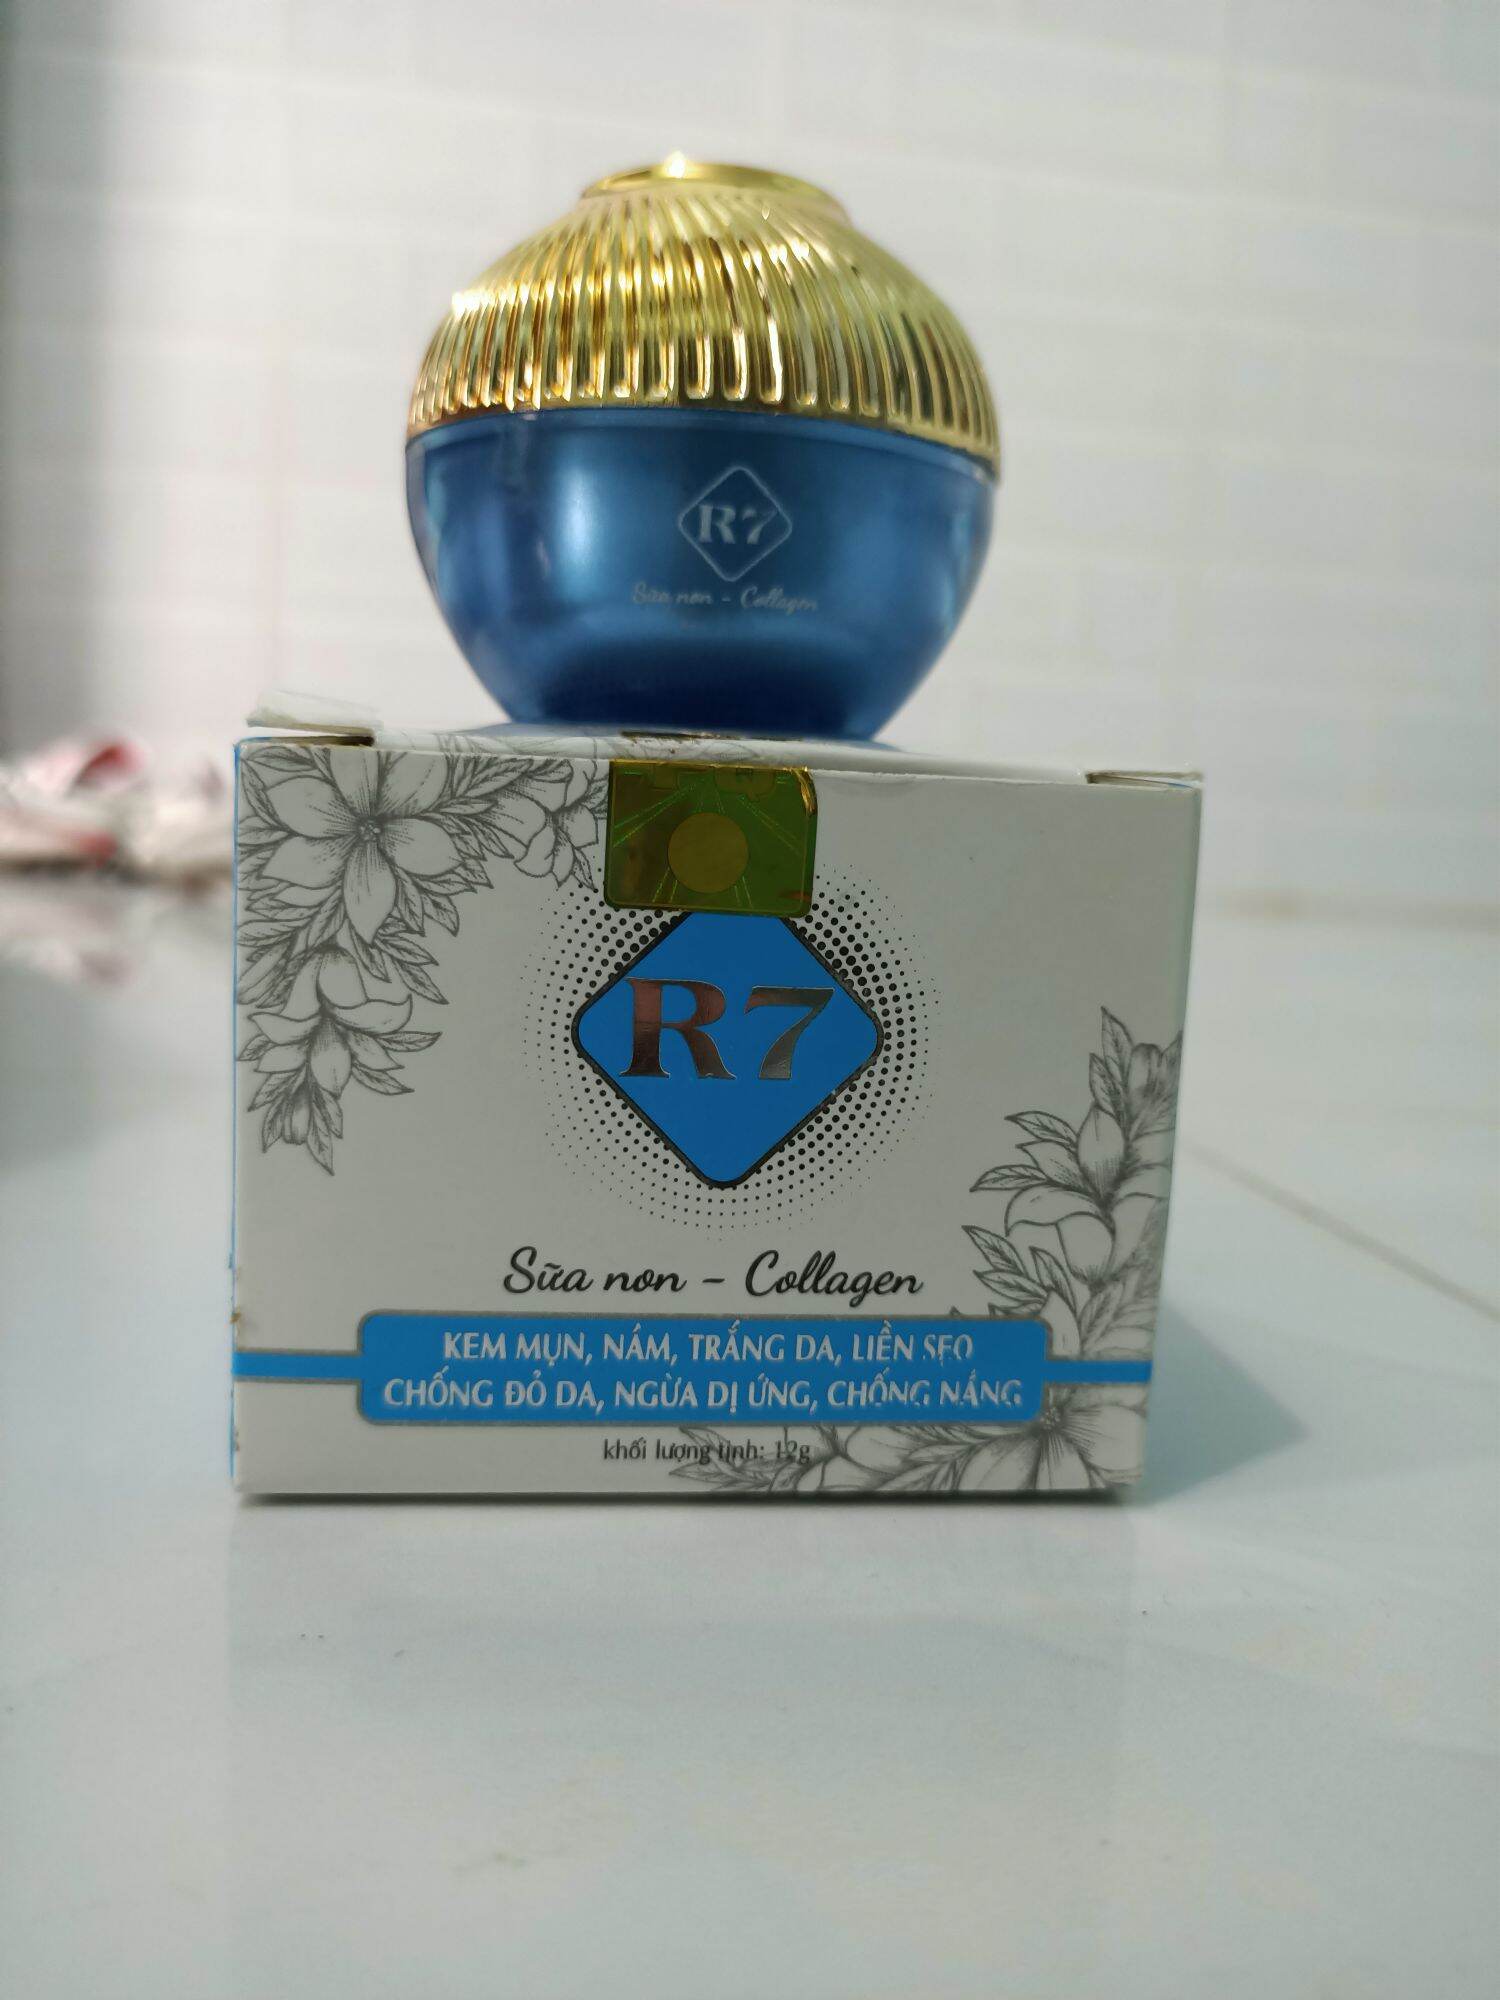 kem R7 xanh dương mụn- nám - trắng da - liền sẹo - chống đỏ da - chống nắng - chống dị ứng 12g